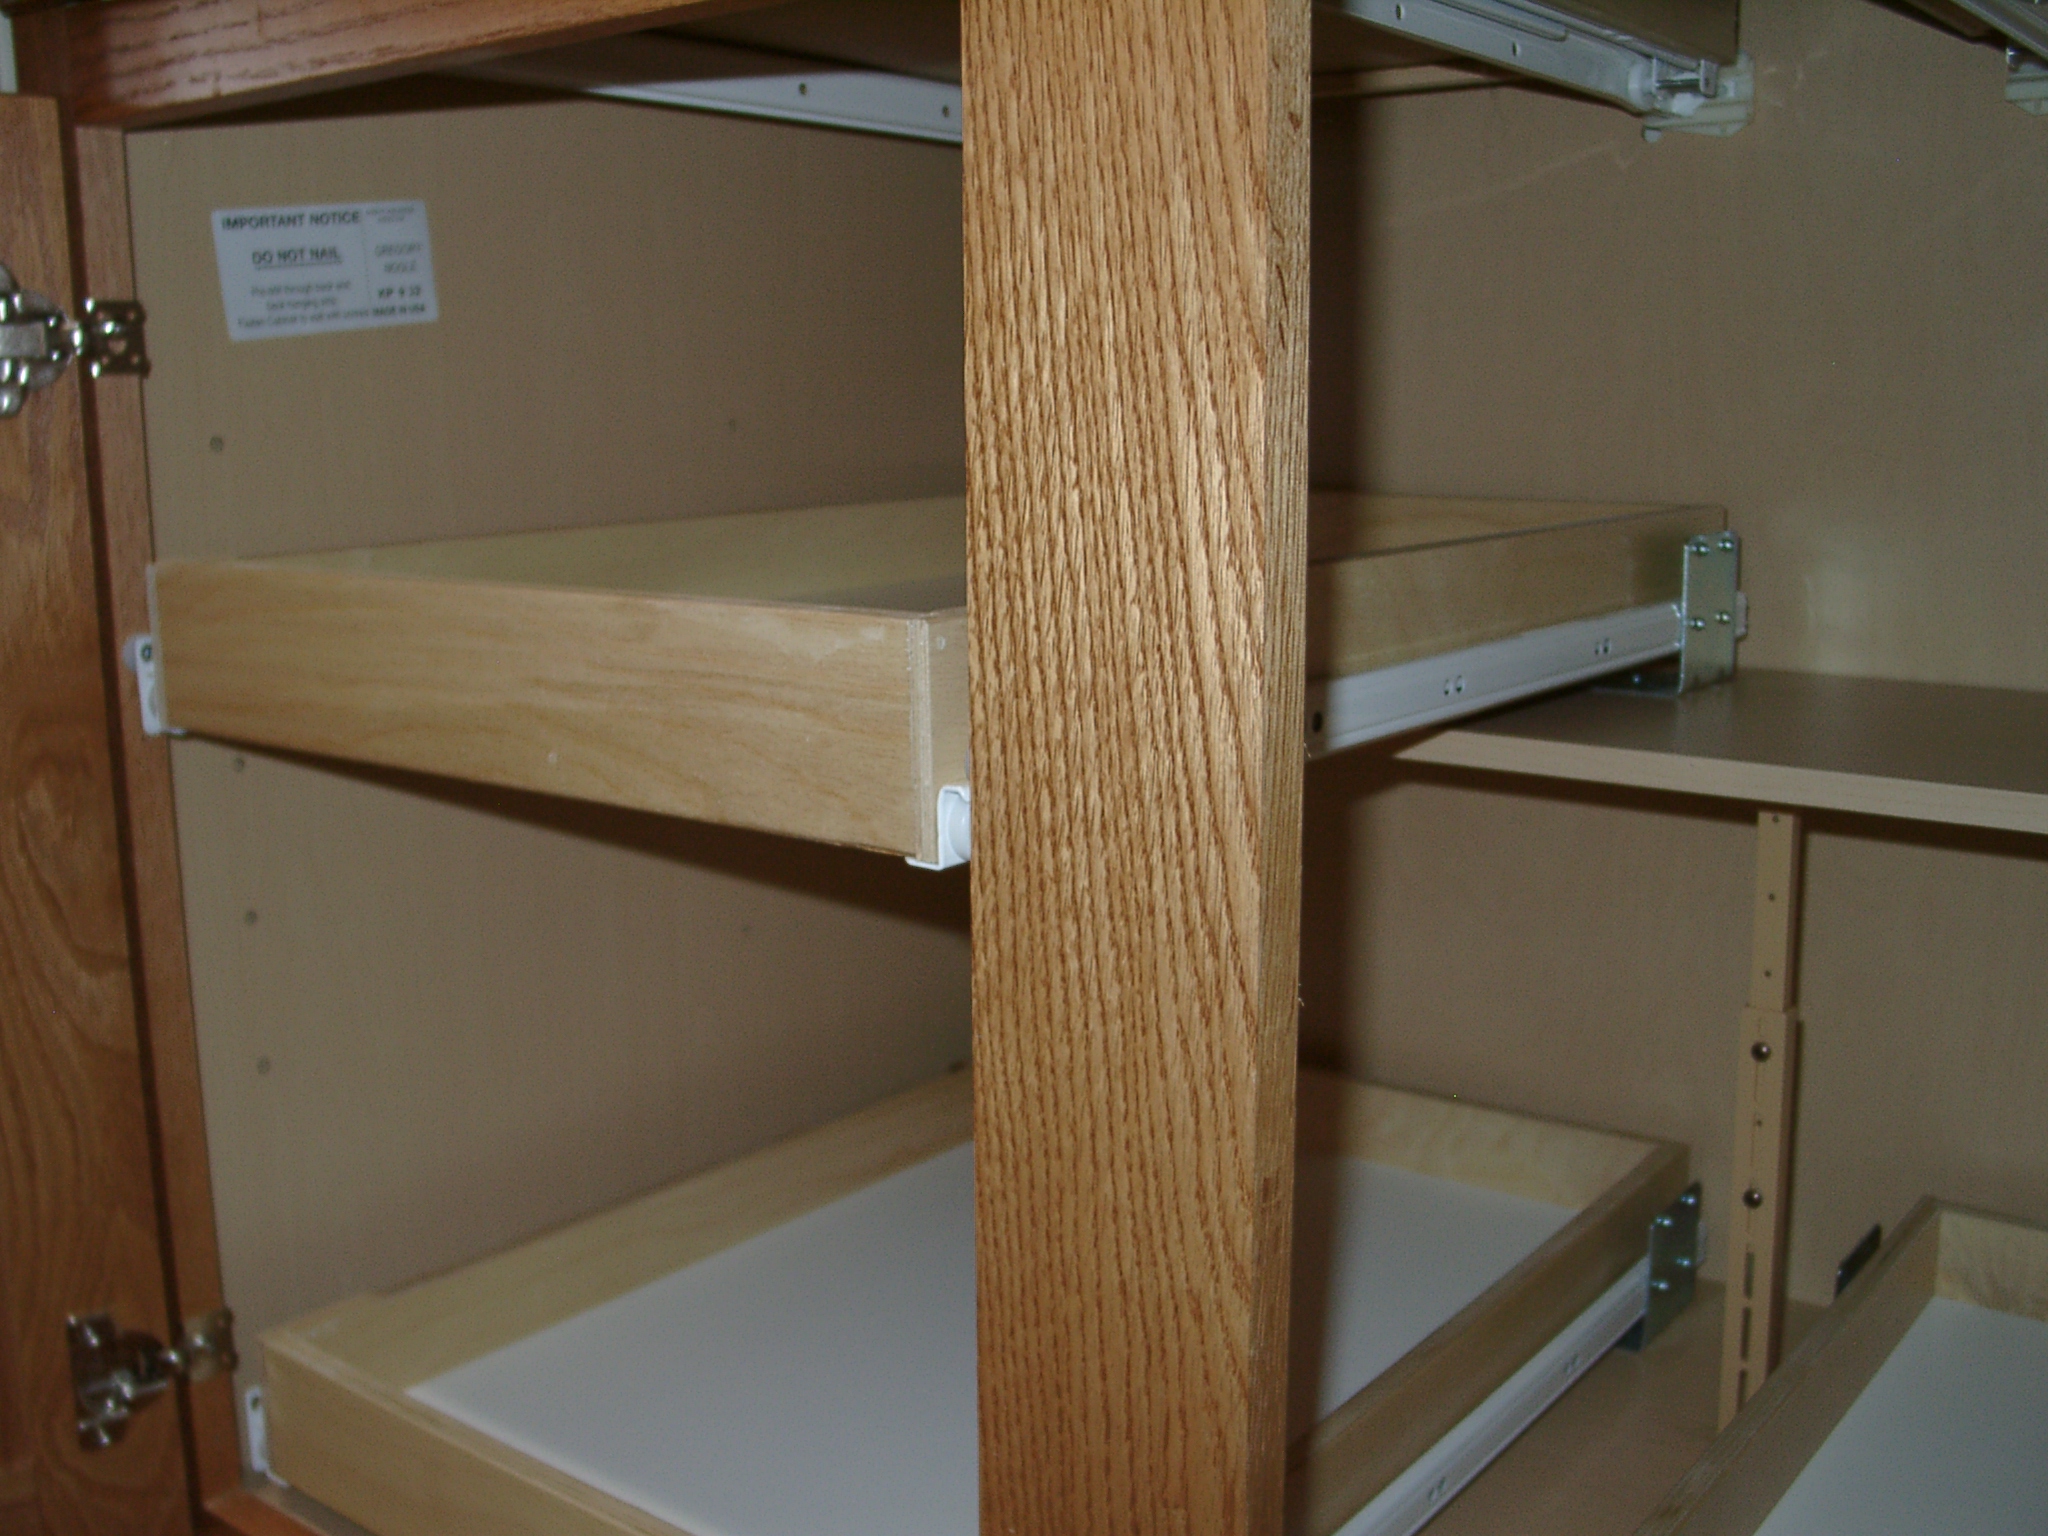 How to Make Simple & Easy Sliding Shelves